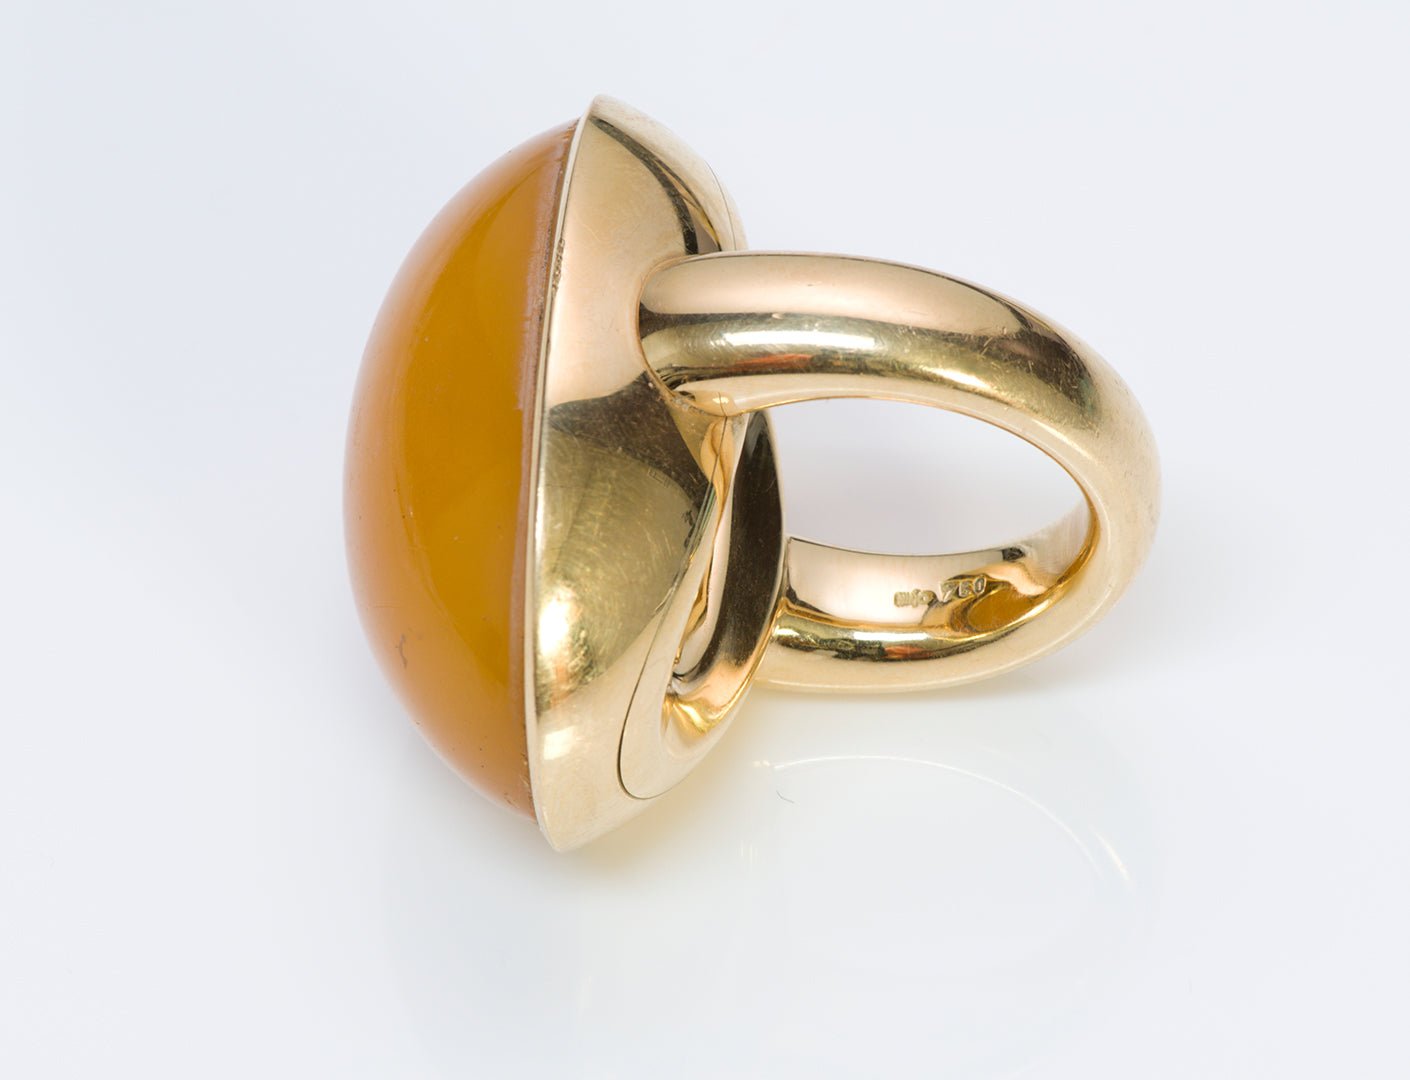 Vintage Majo Fruithof 18K Yellow Gold Amber Ring